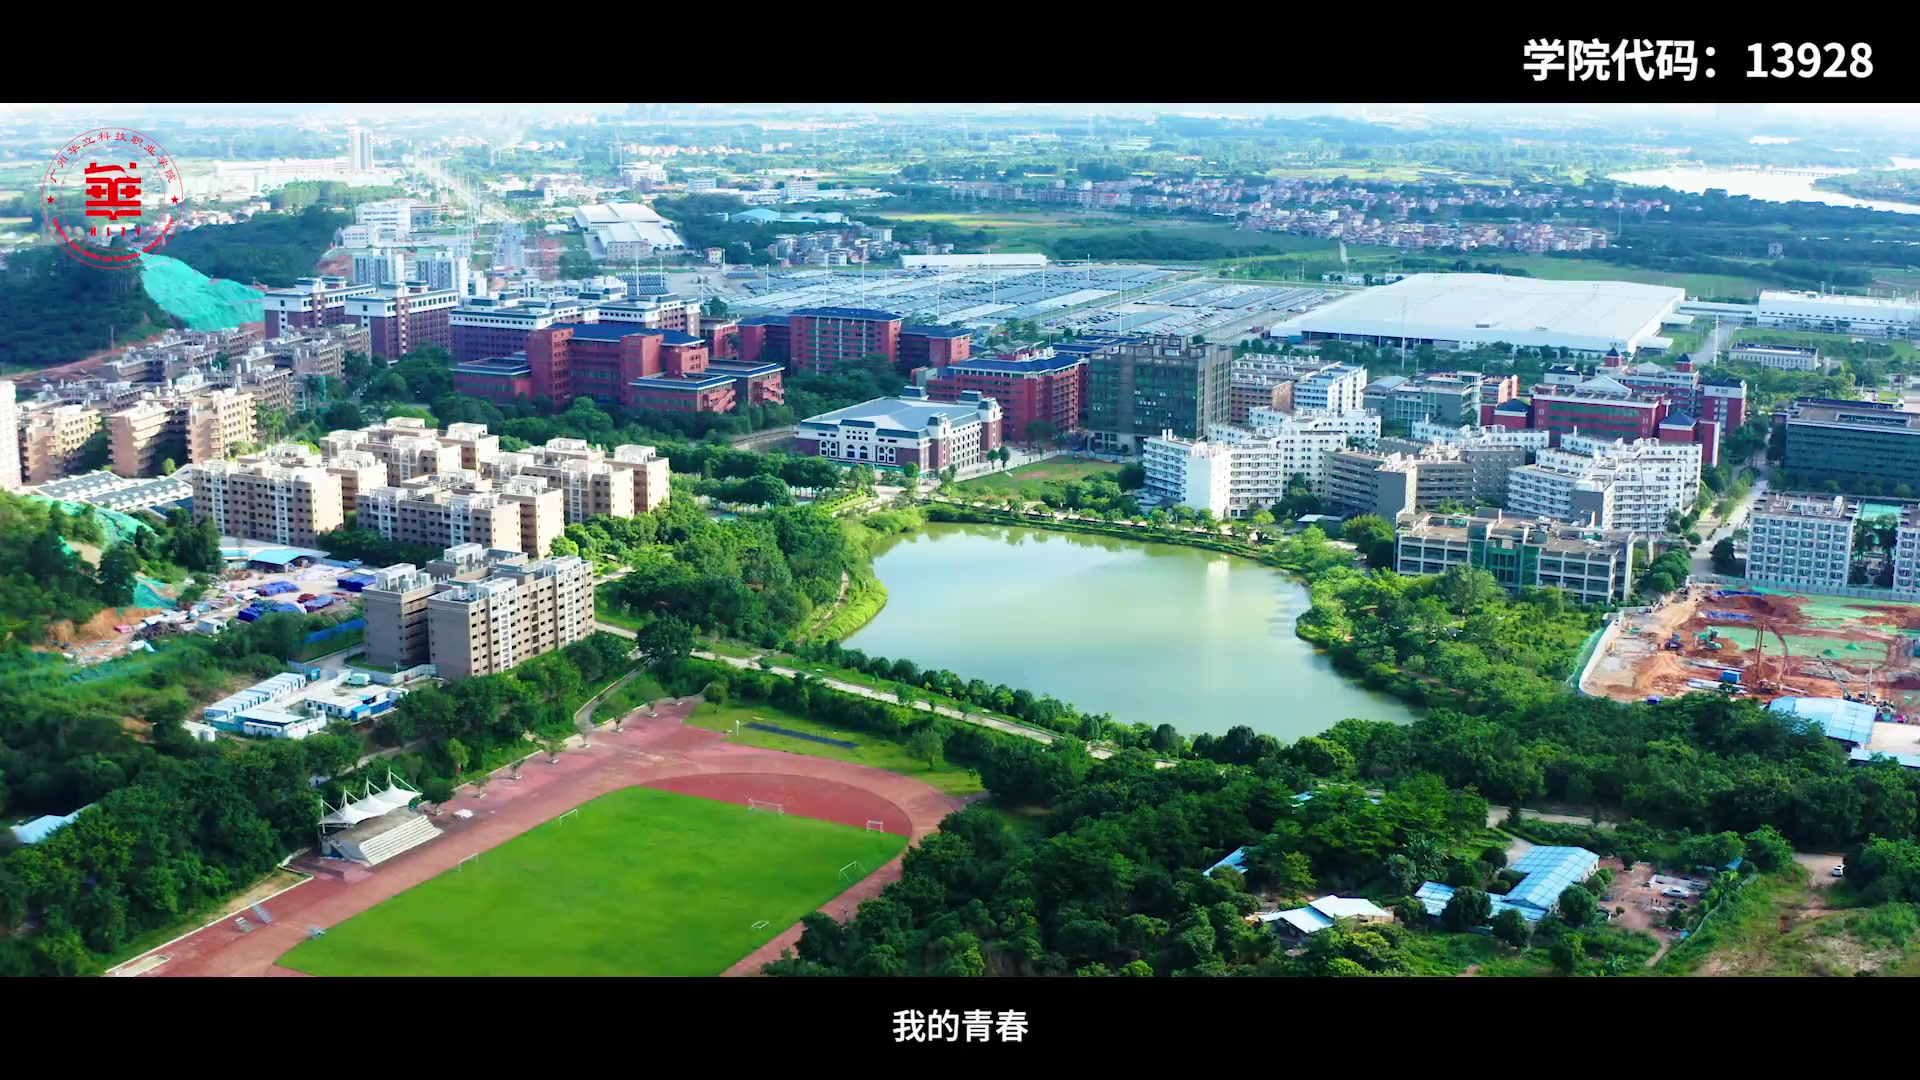 成绩公布! 瞄准这个好专业扎堆的学校: 广州华立科技职业学院 13928